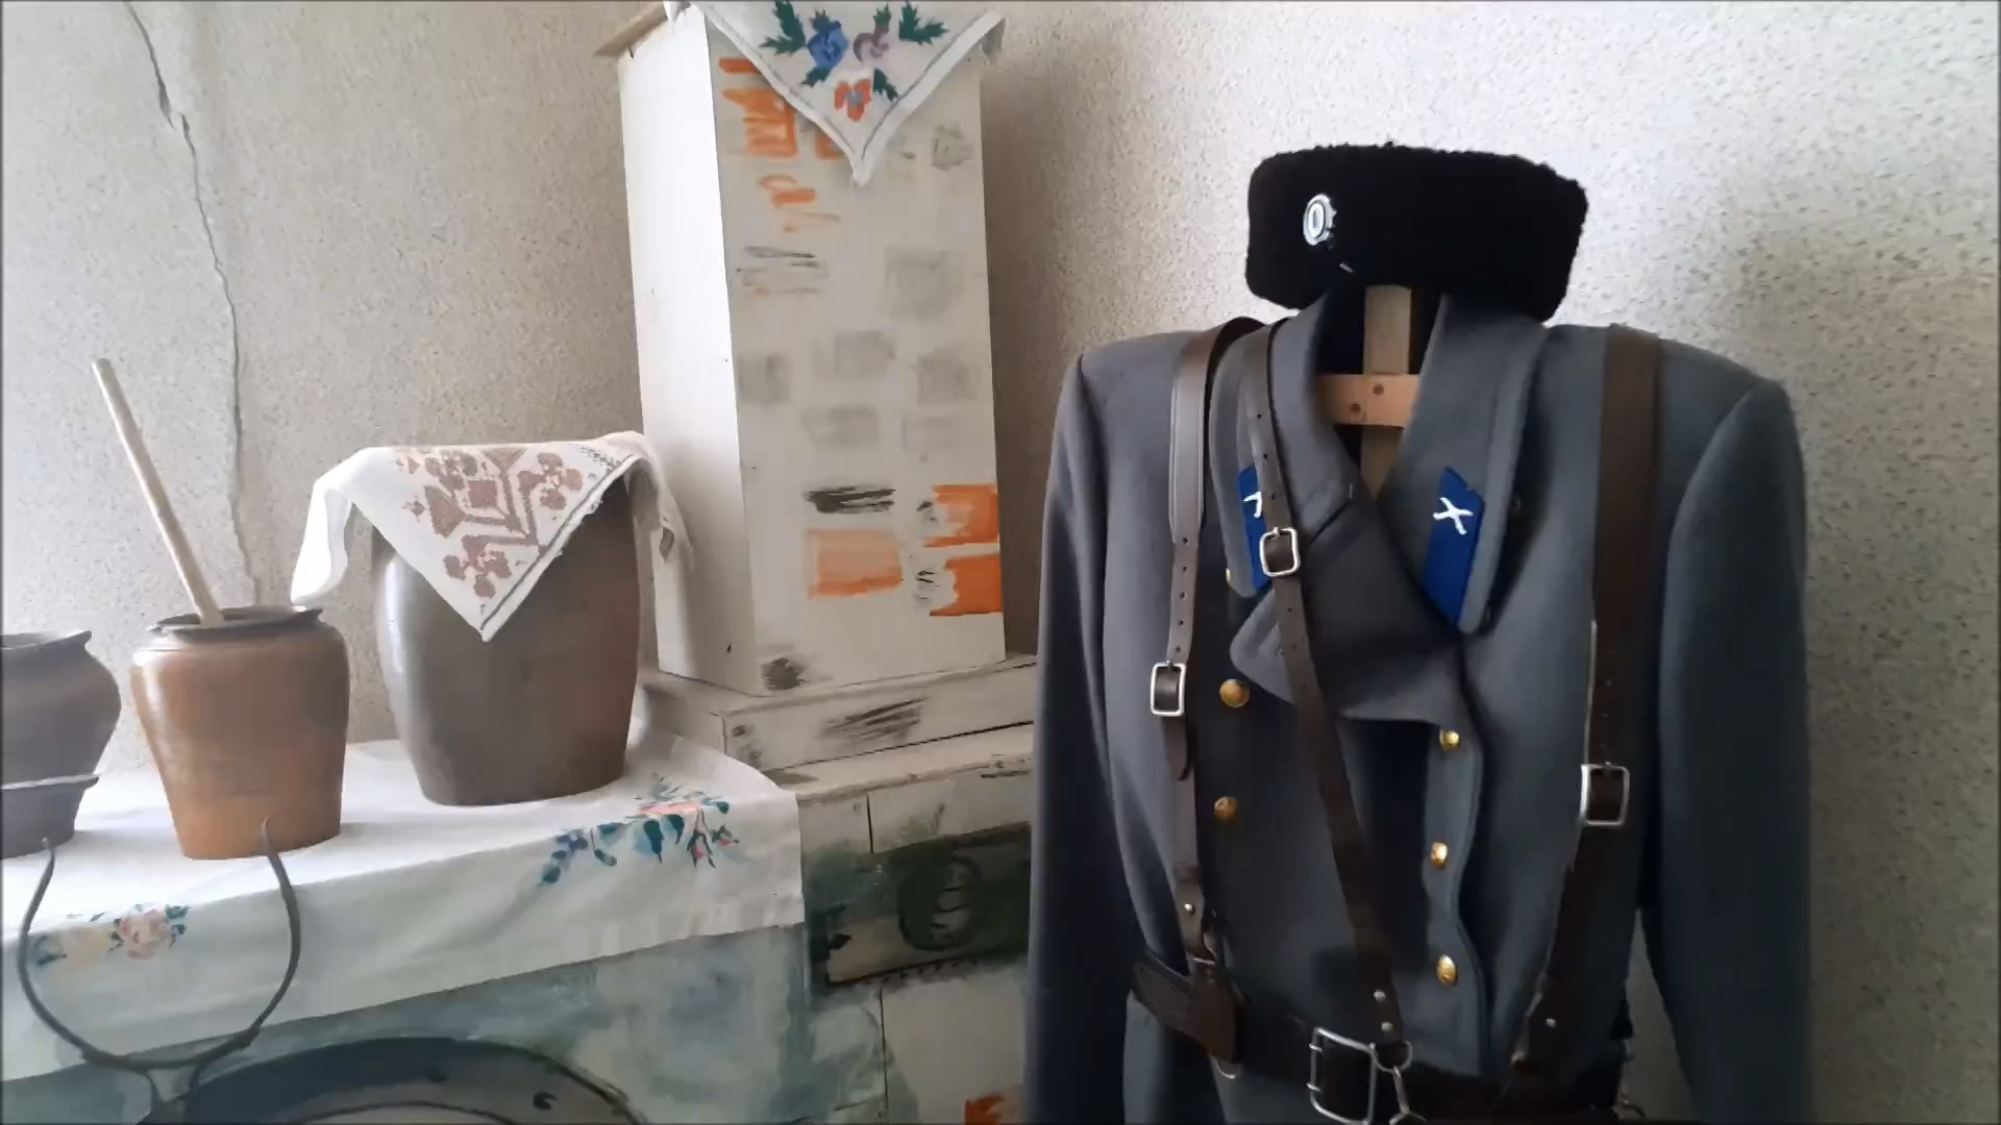 Видео: онлайн экскурсия по музею казачества школы № 27 города Касли Челябинской области